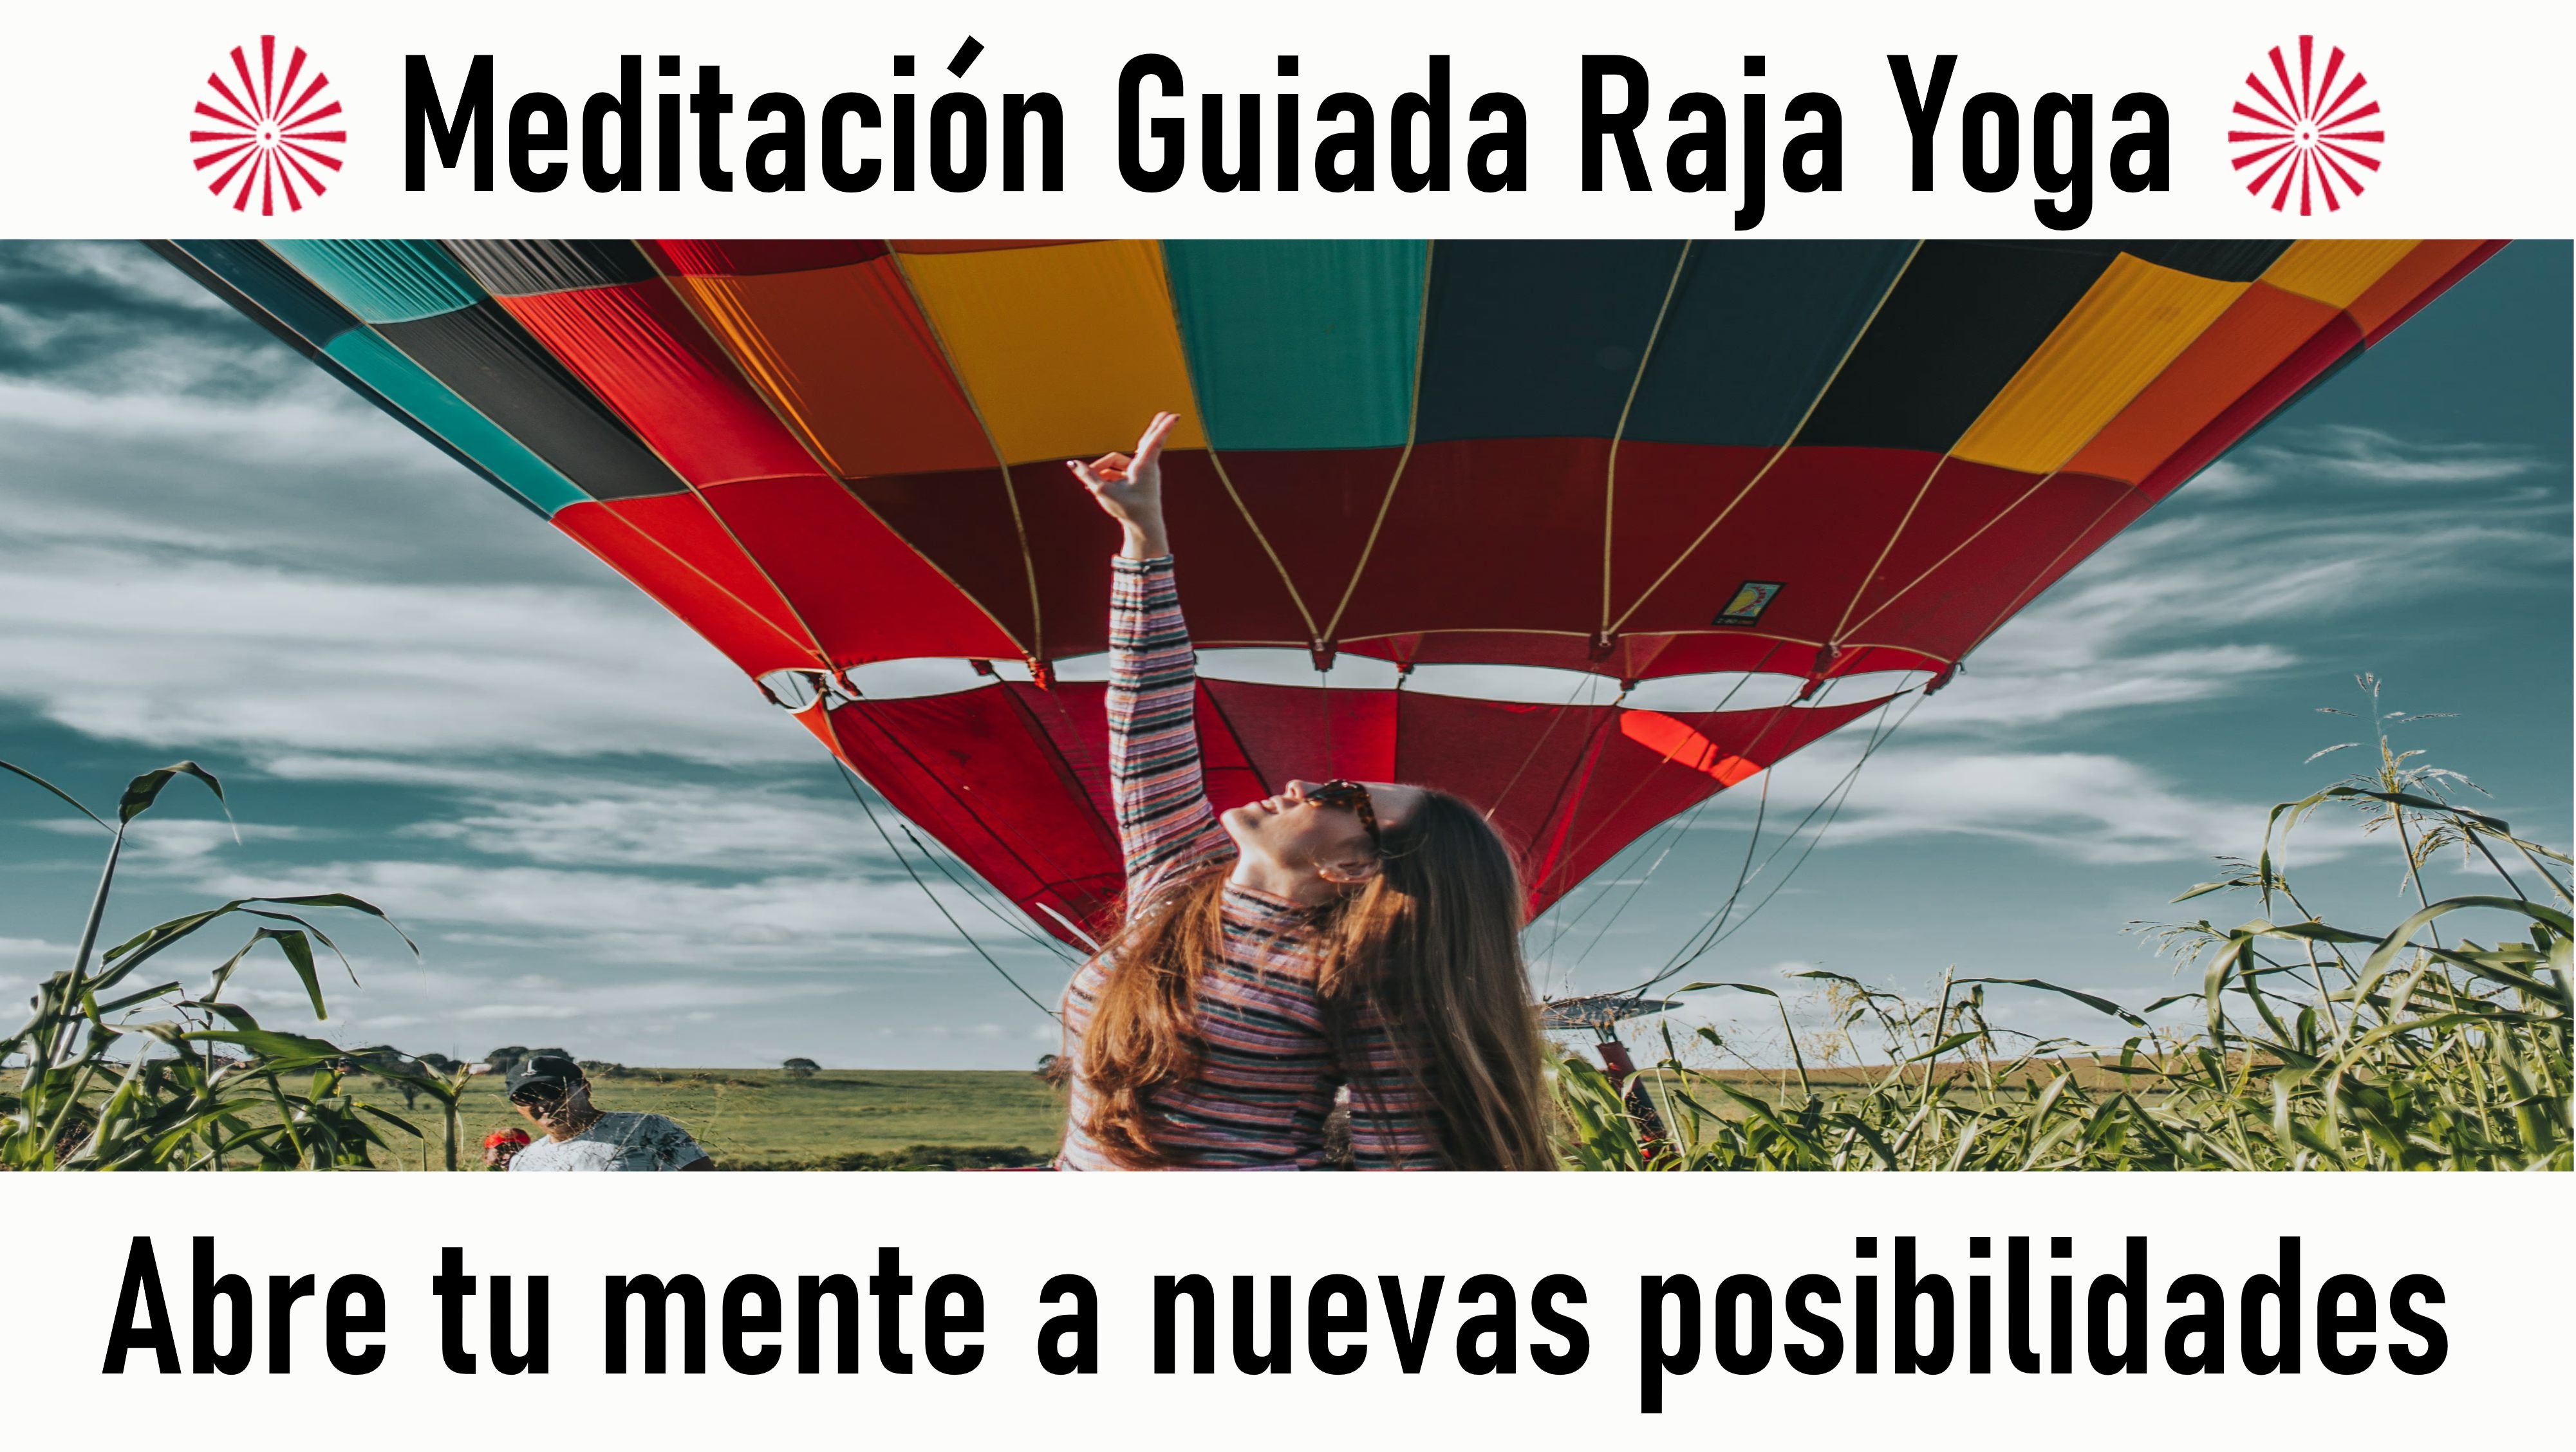 Meditación Raja Yoga: Abre tu mente a nuevas posibilidades (11 Septiembre 2020) On-line desde Madrid